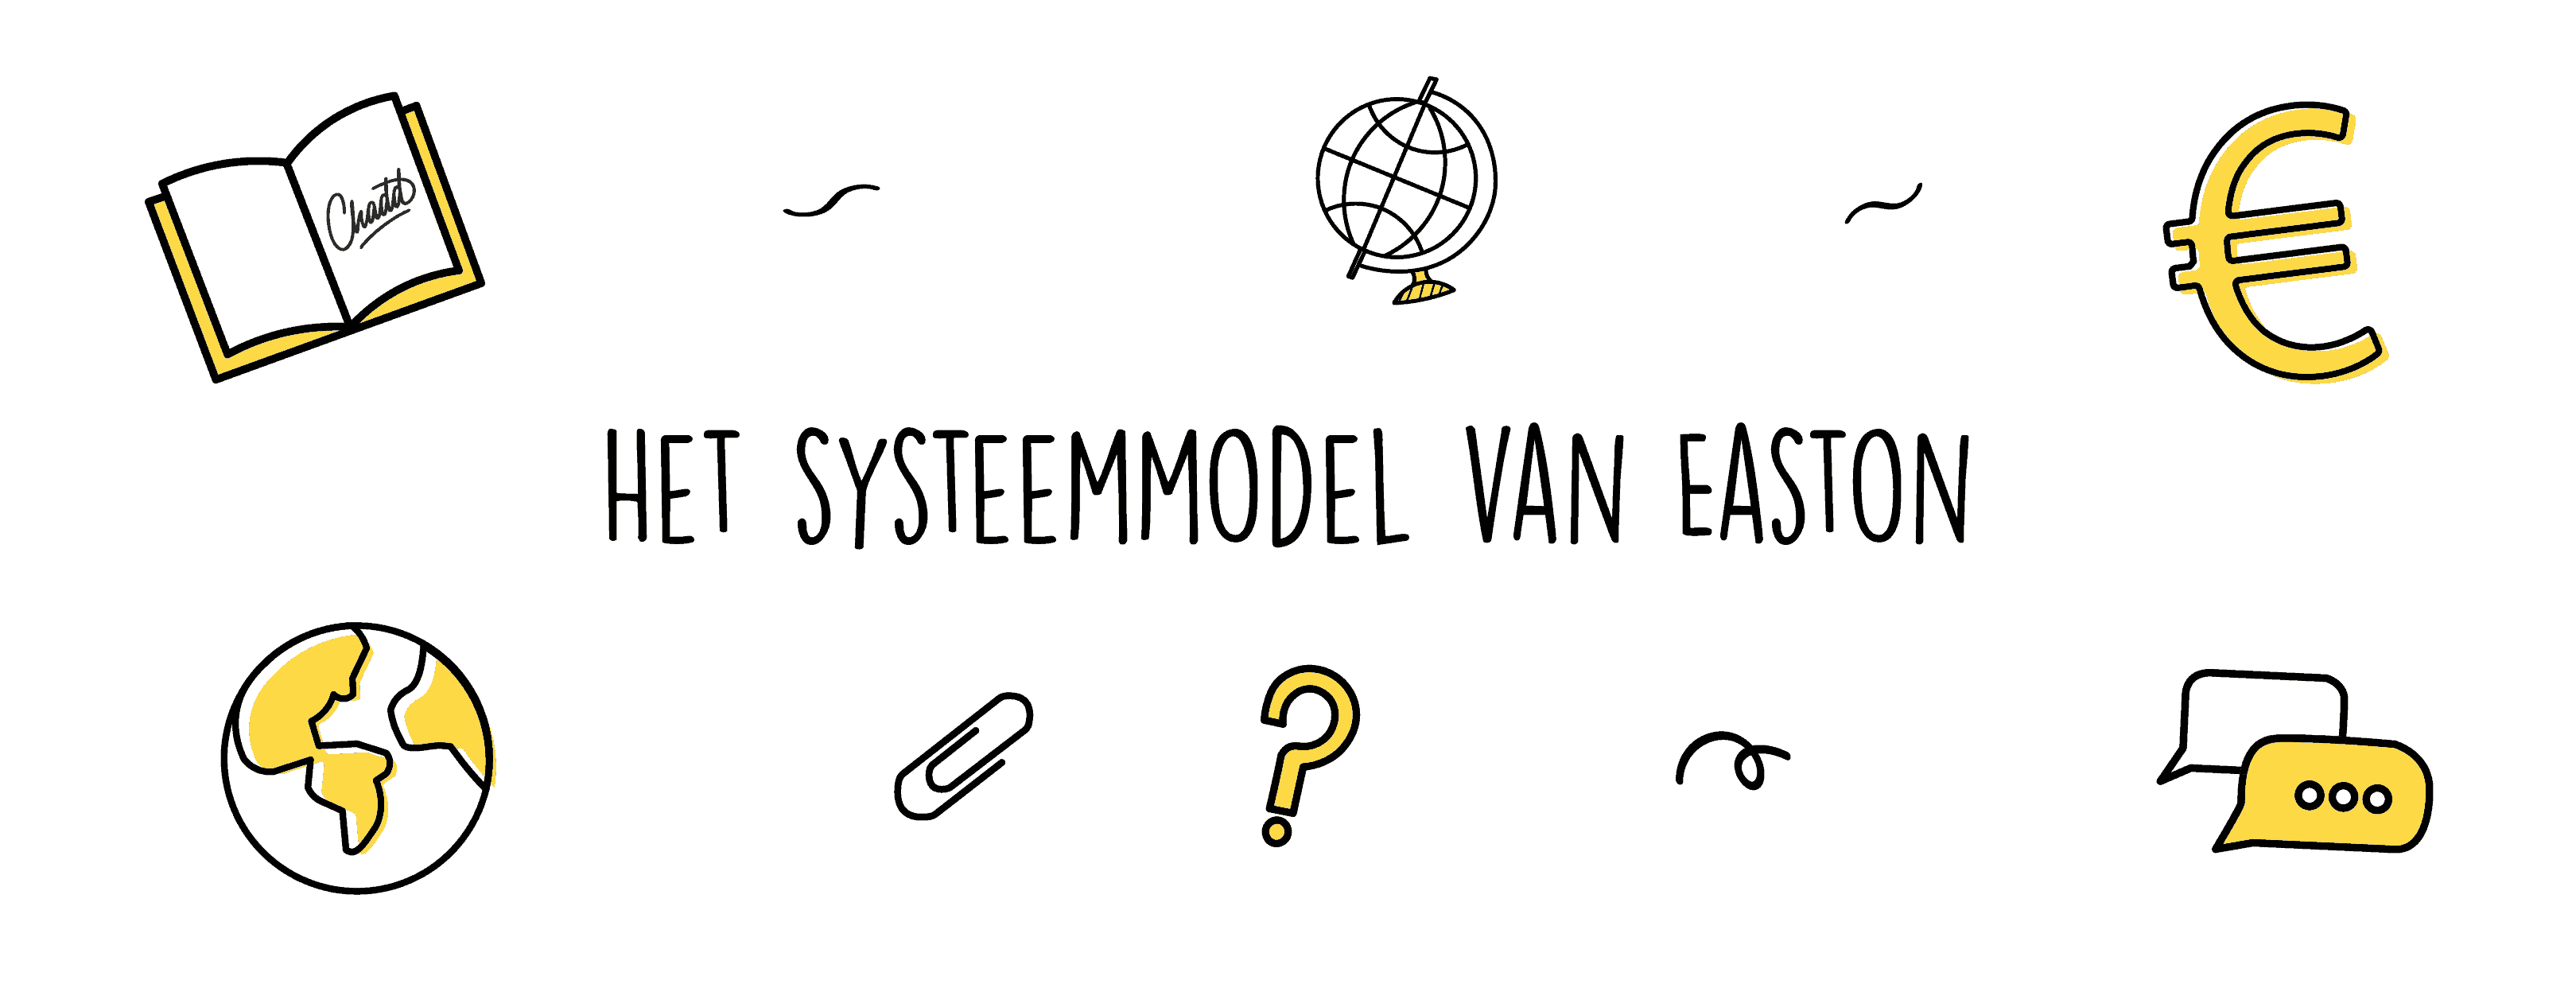 Het systeemmodel van Easton